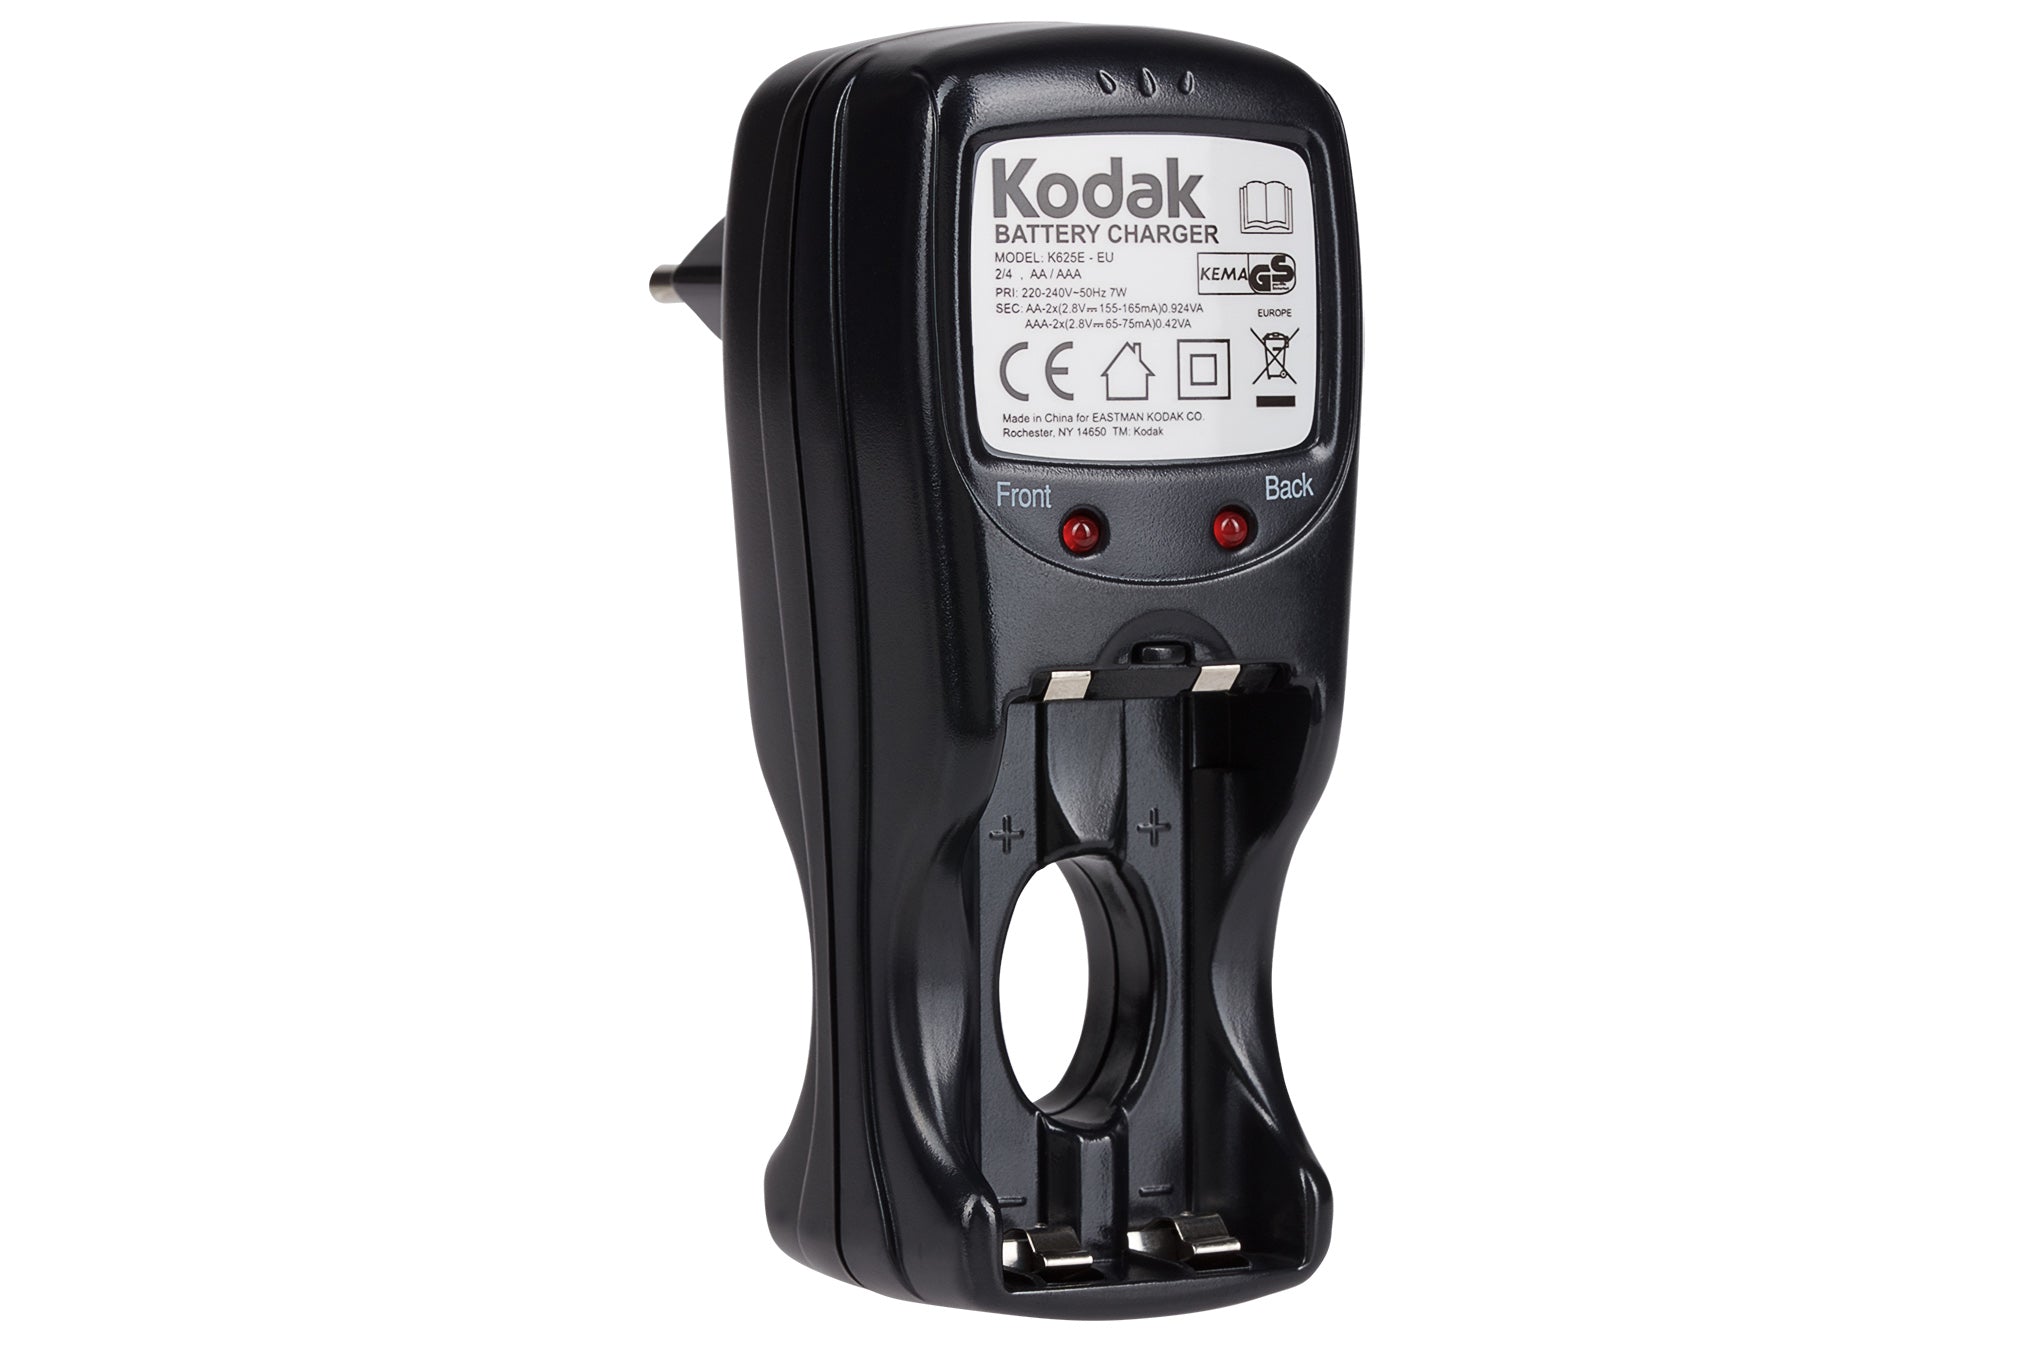 Kodak K625E-EU European Plug AA/AAA Battery Charger - Black